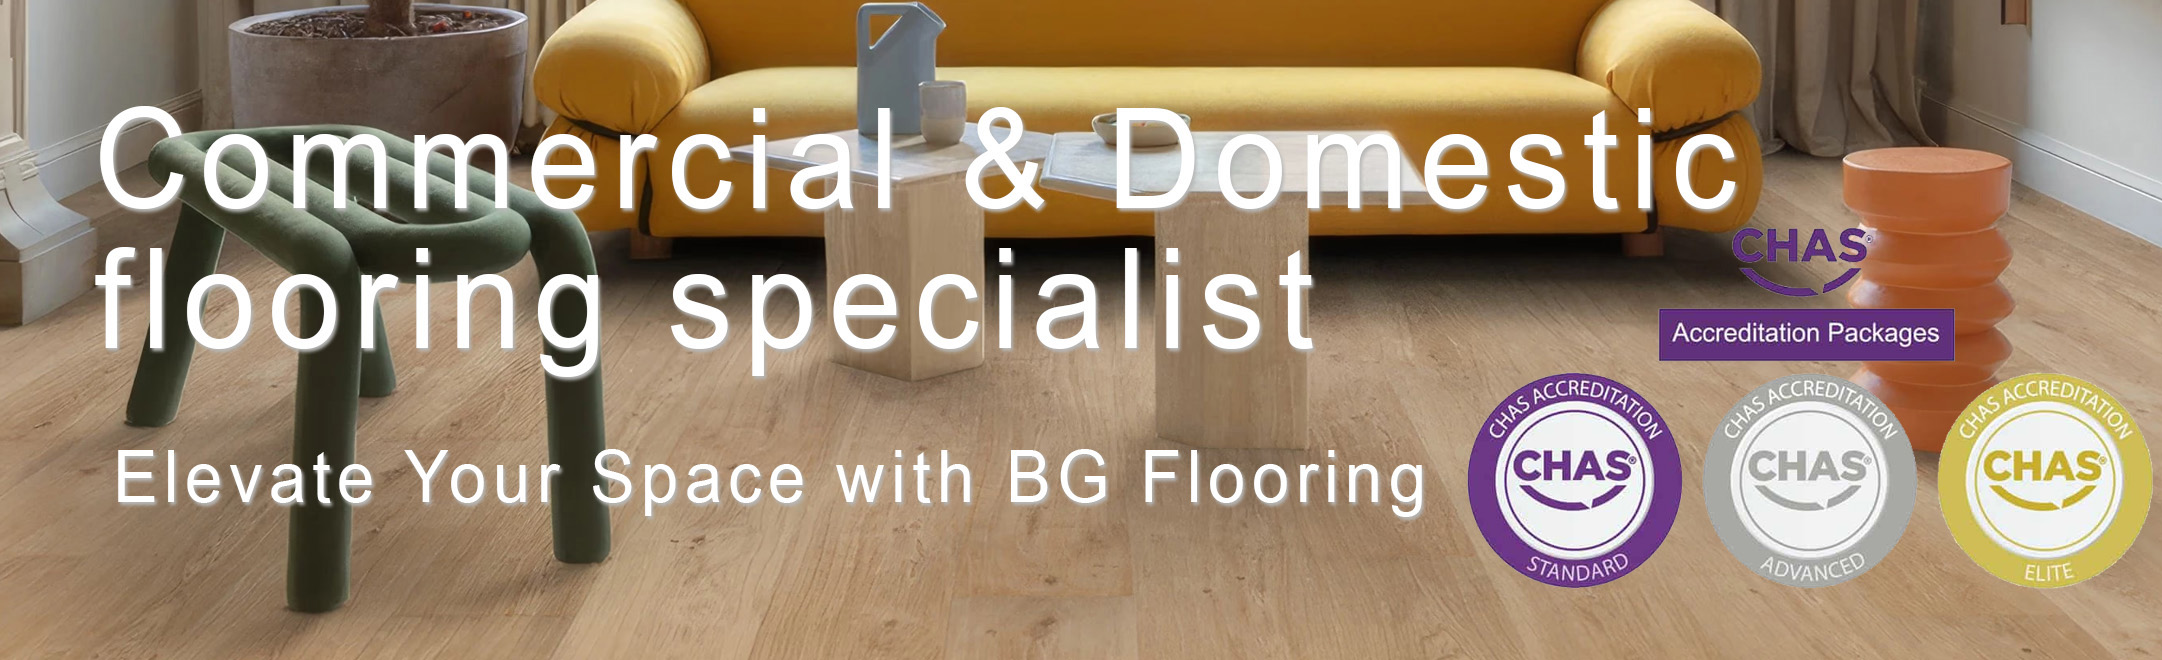 BG Flooring (NE) Ltd Commercial Domestic